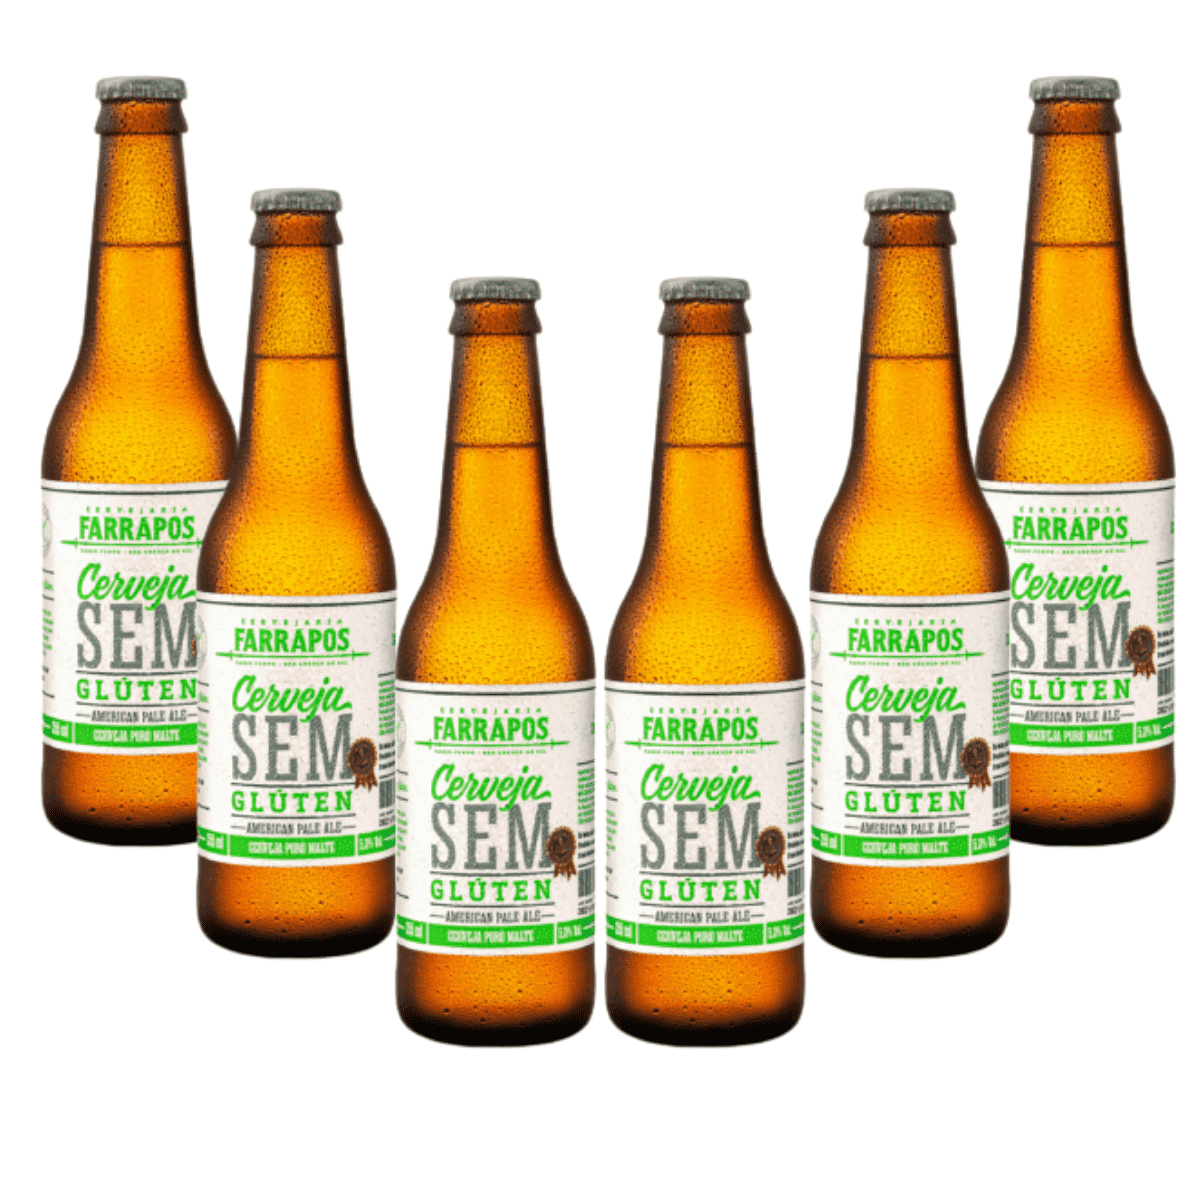 Pack Farrapos Sem Gluten APA 6 cervejas 355ml  - RS BEER - Cervejas Gaúchas